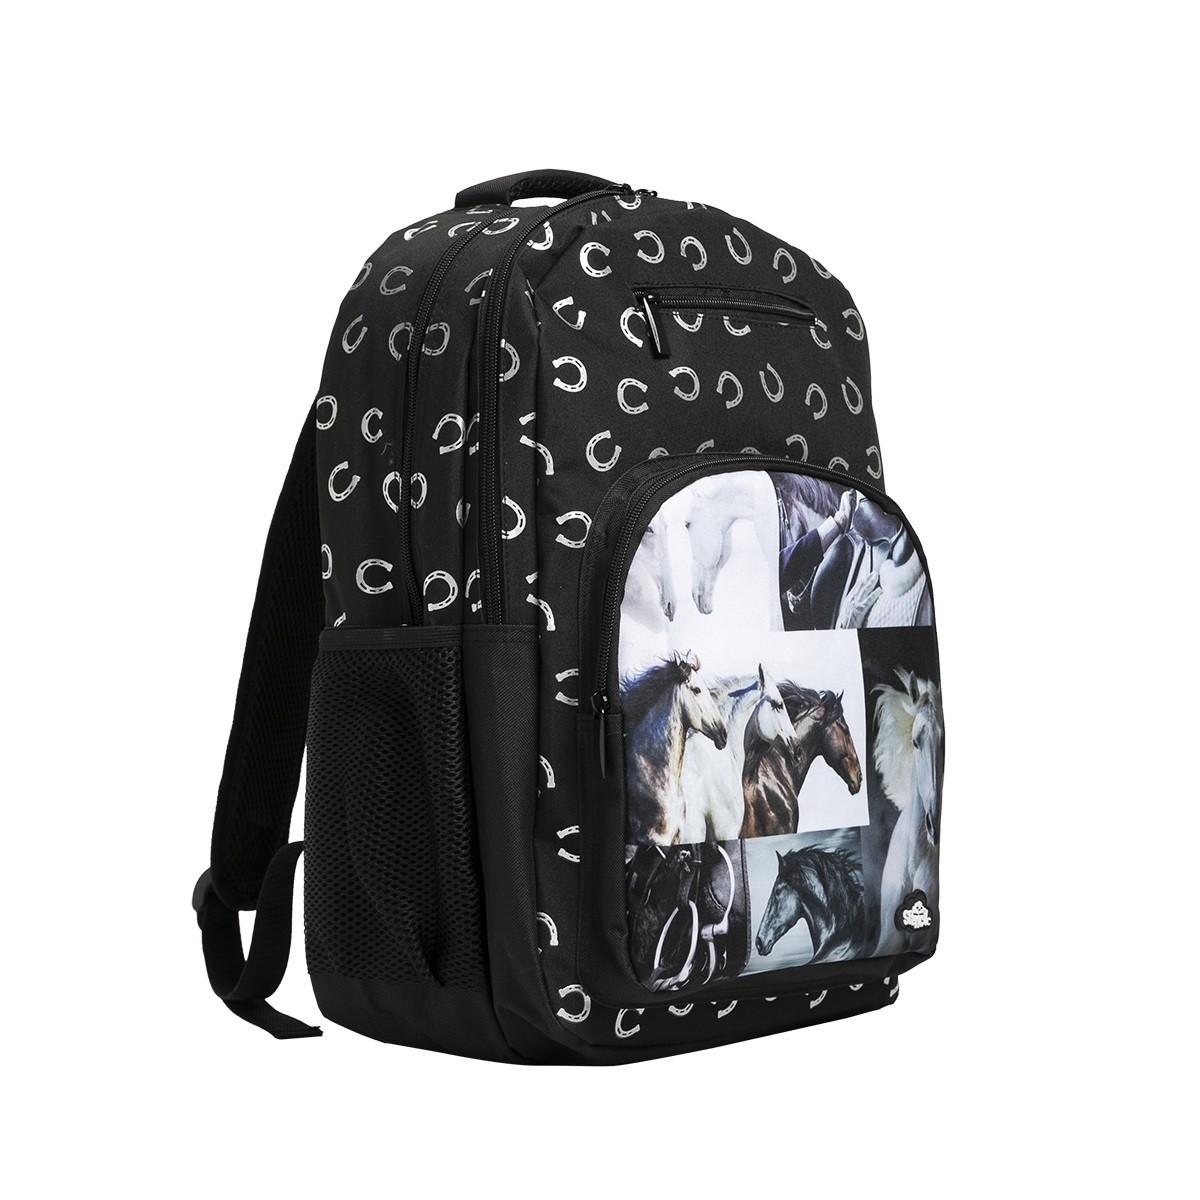 Triple Backpack - B&W Horses - School Locker